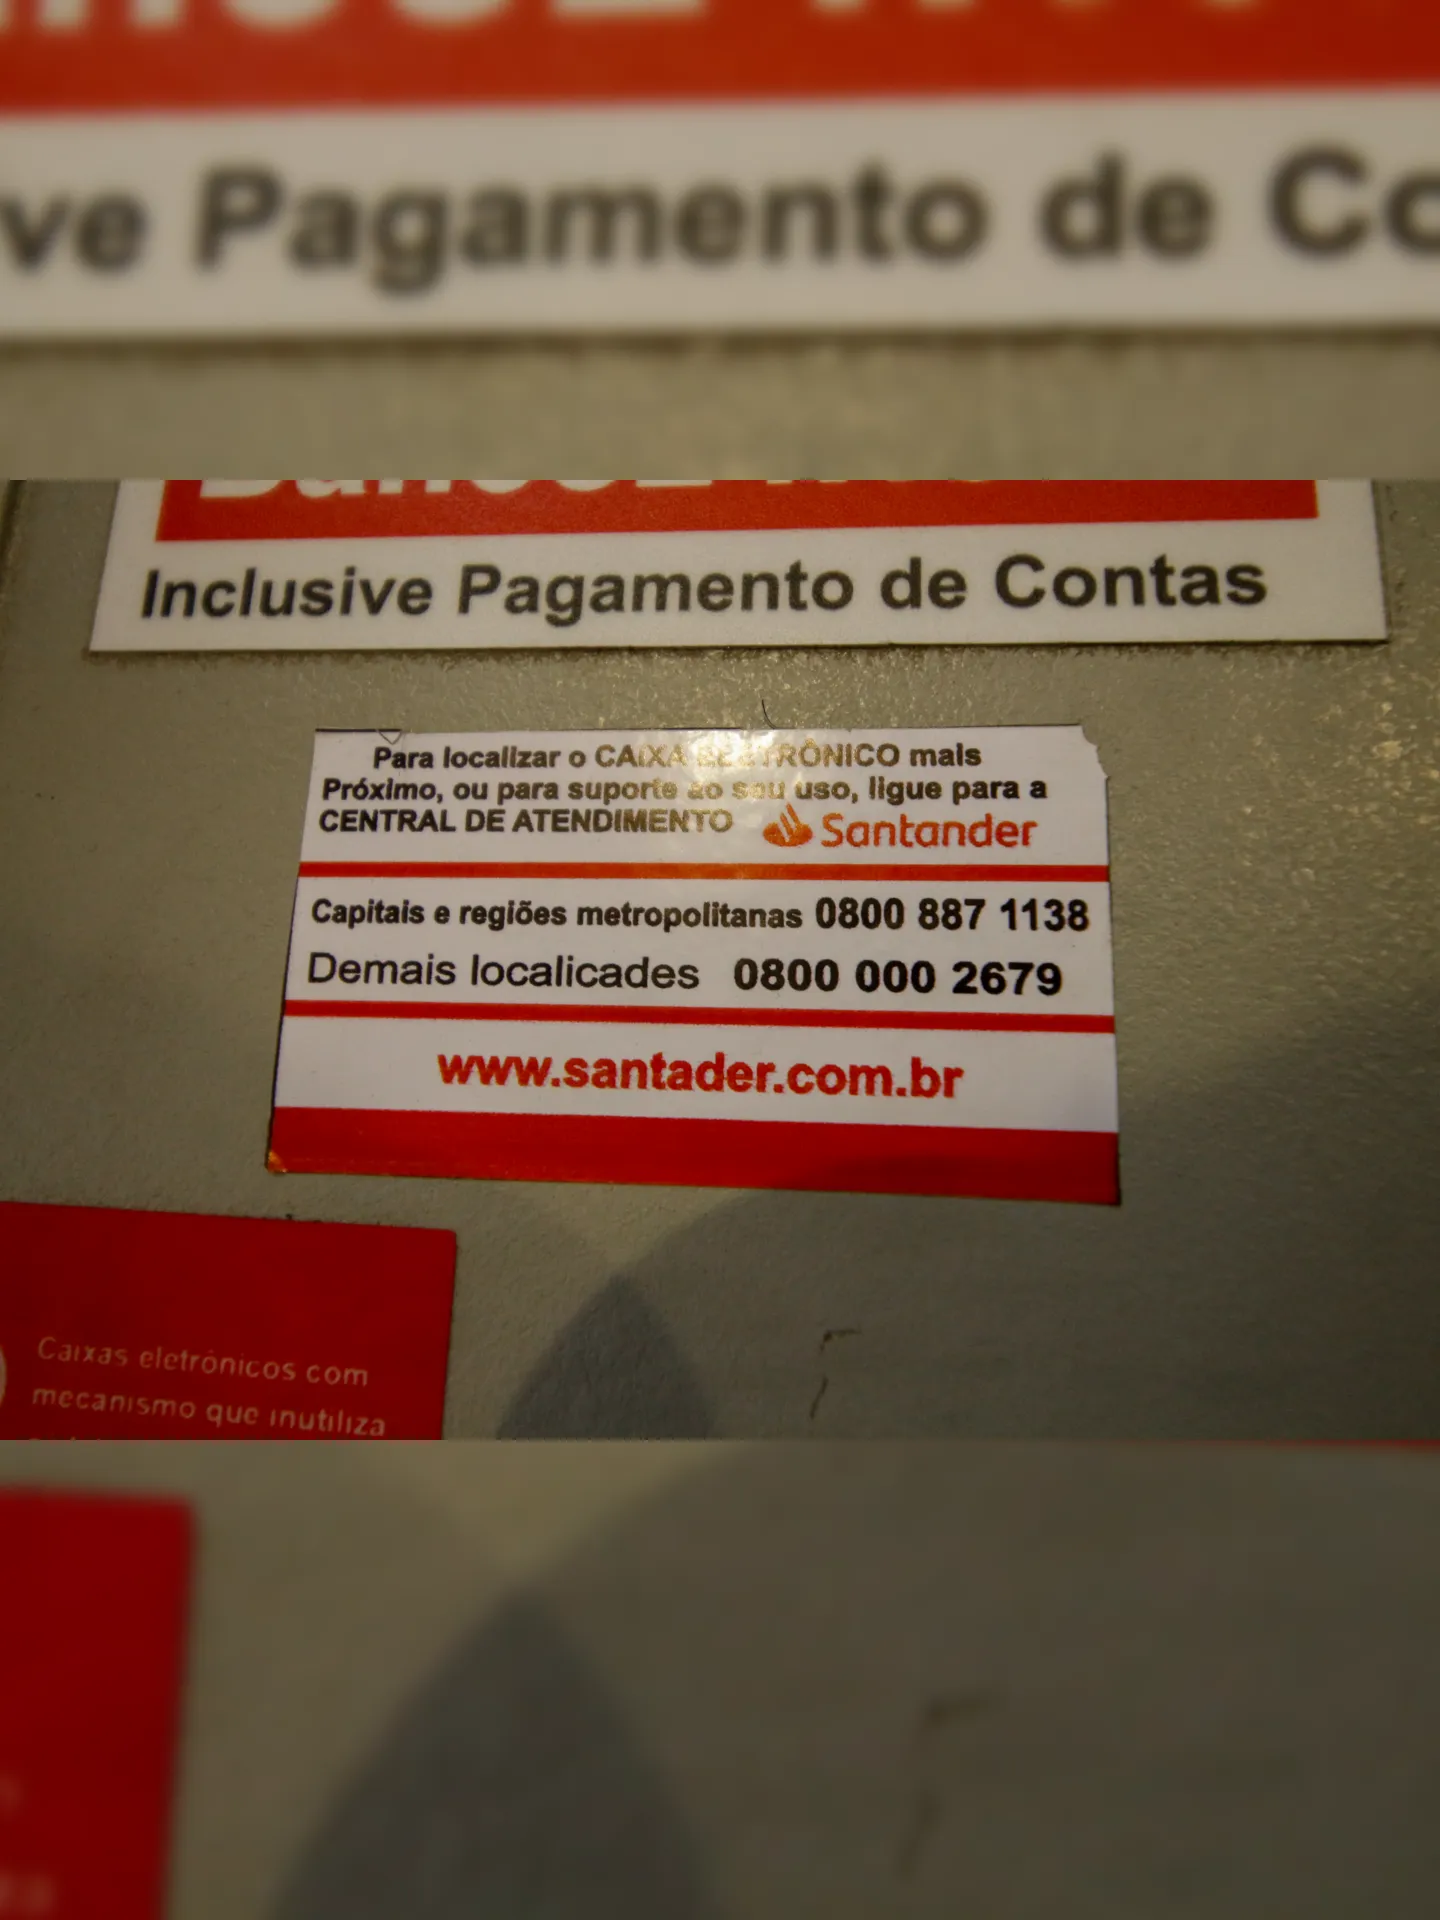 Bilhete aparece com diversos erros de português, inclusive no nome do banco